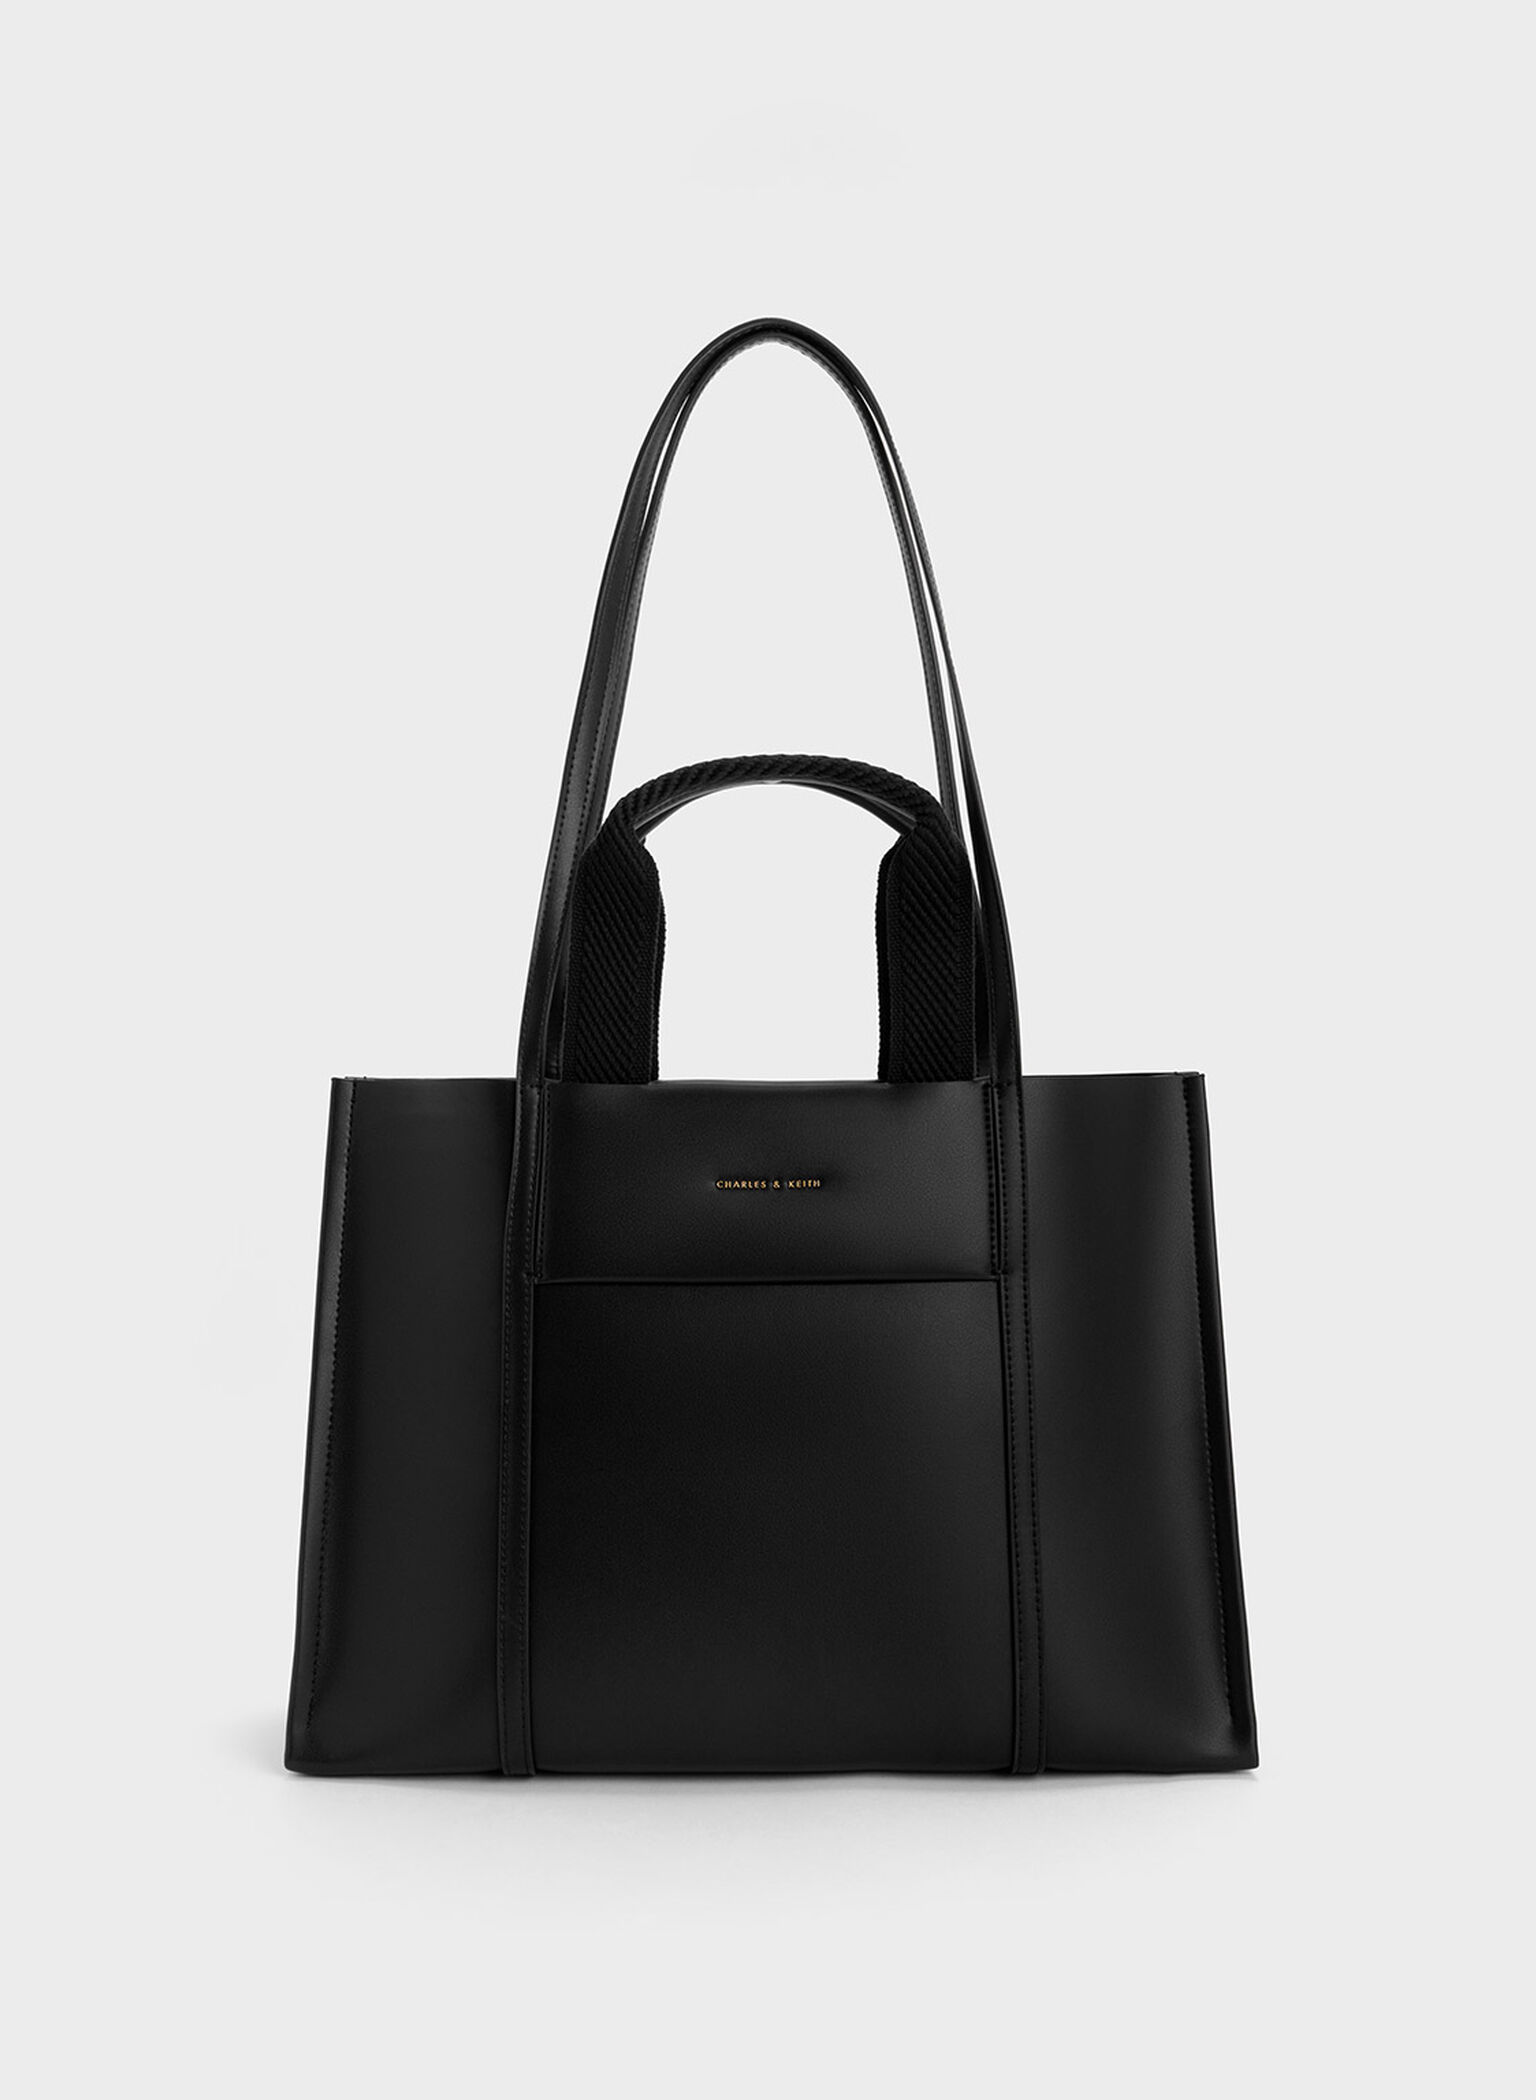 Charles & Keith - Women's Shalia Tote Bag, Black, XL